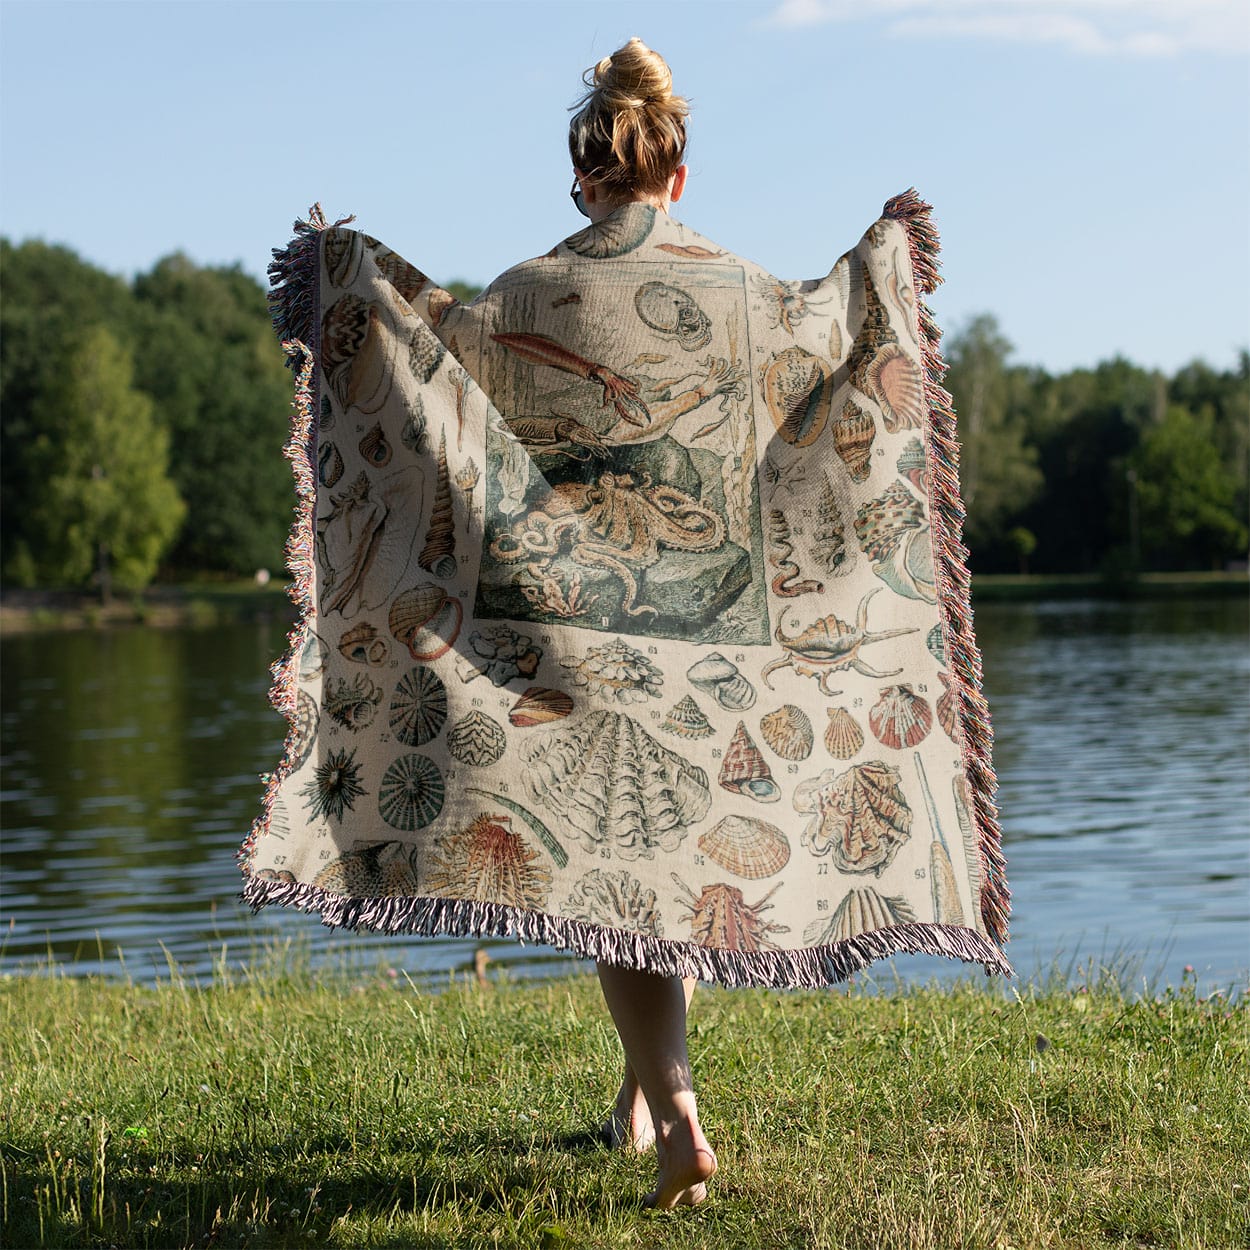 Seashells Woven Blanket Held on a Woman's Back Outside